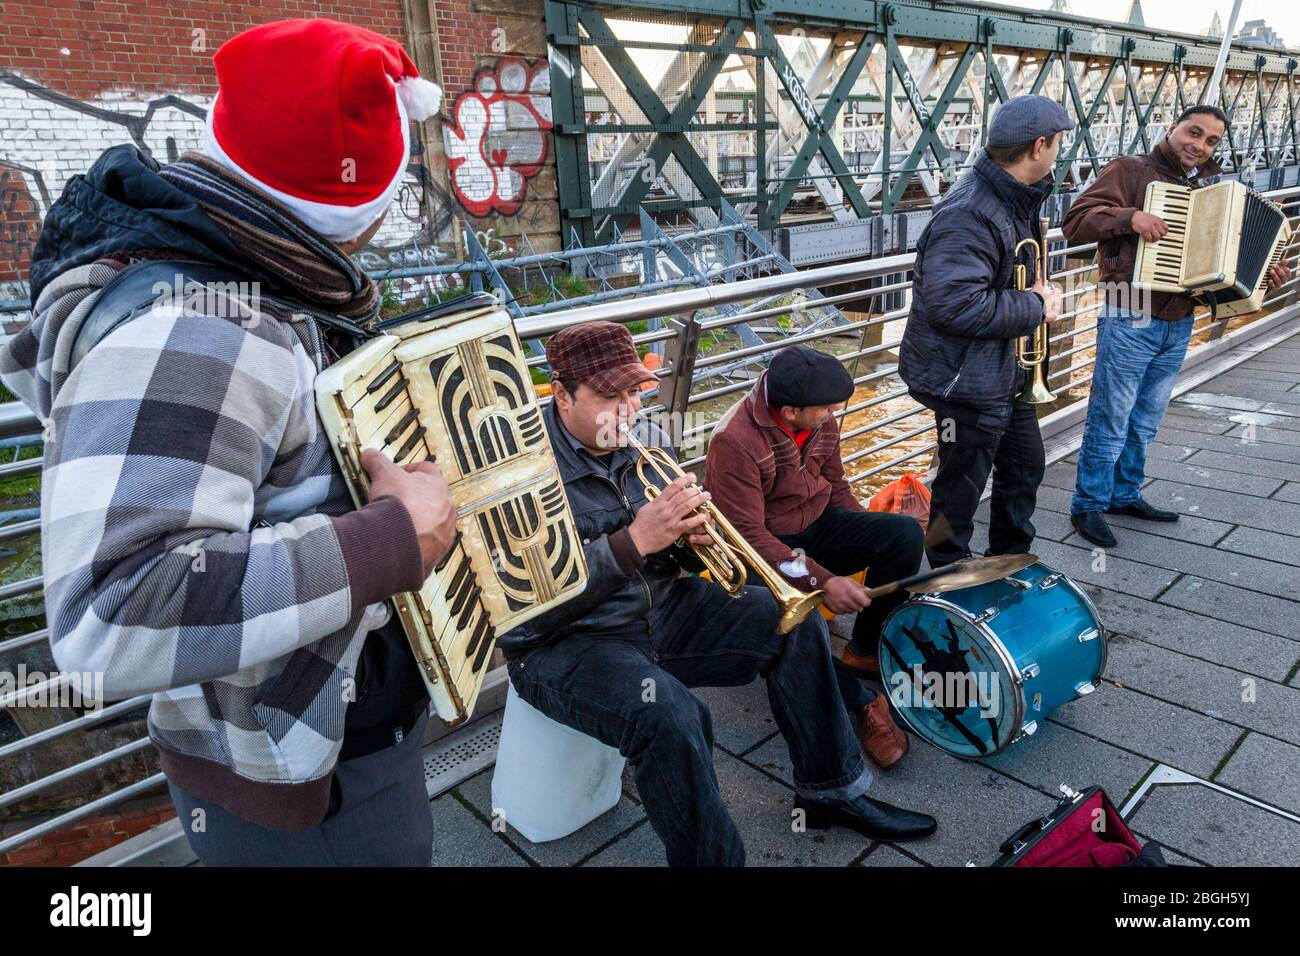 Gruppe von Musikern, die draußen buschieren. Busker spielen Musik auf Akkordeons, Trompeten und einer Trommel auf einer Brücke, London, England, Großbritannien Stockfoto